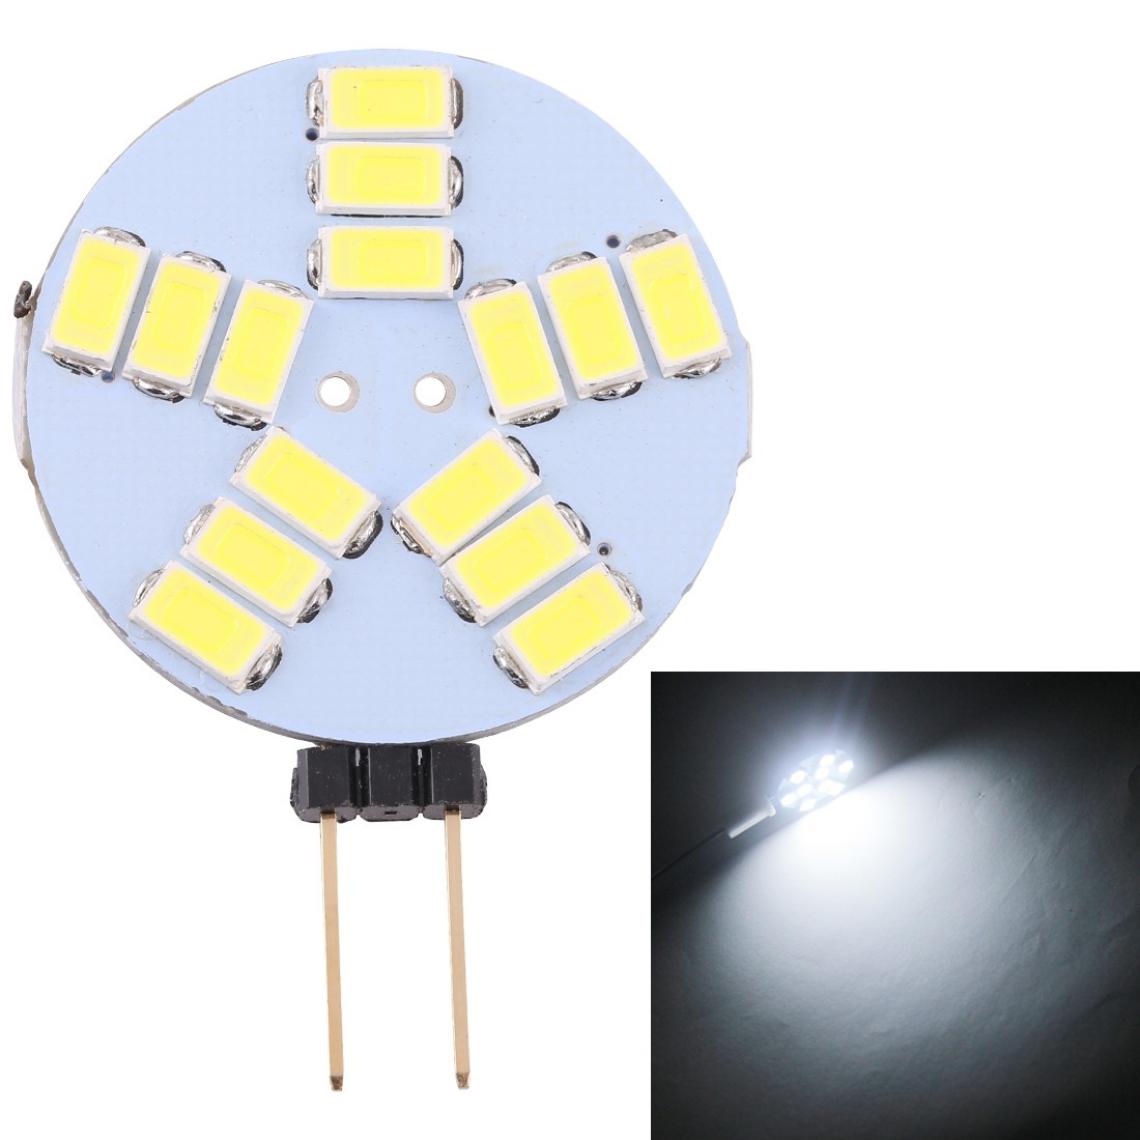 Wewoo - G4 15 LED SMD 5730 400LM 6000-6500K Ampoule de lampe de base à broche à économie d'énergie à intensité variableDC 12V lumière blanche - Ampoules LED